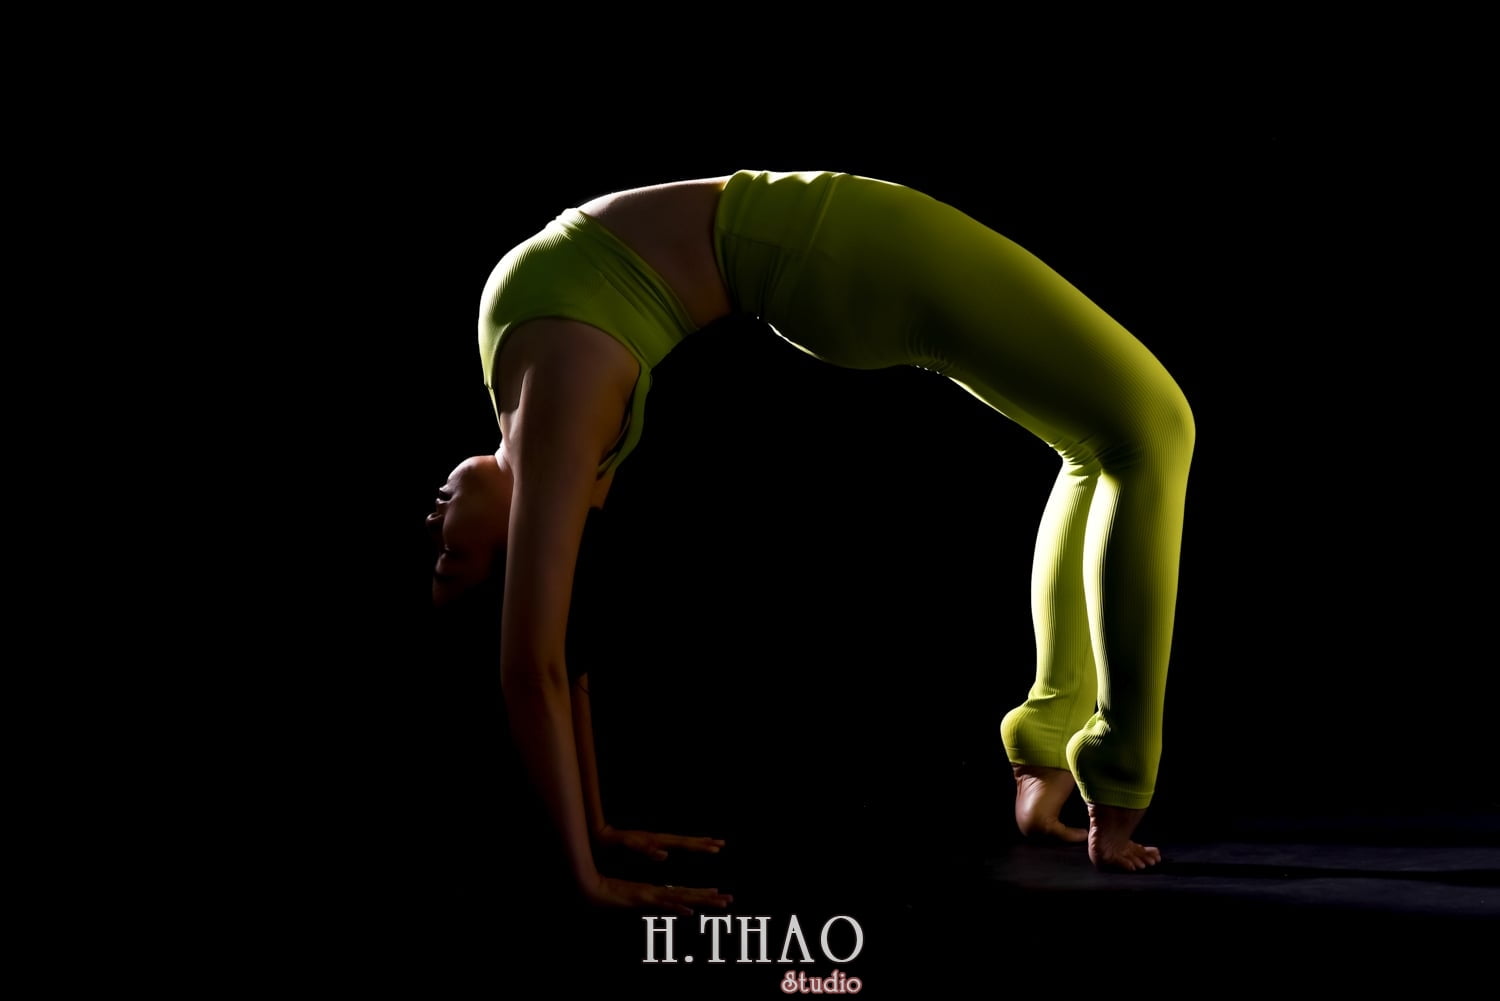 Anh yoga 24 min - Studio chuyên chụp ảnh nghệ thuật cho nữ tại Tp.HCM - HThao Studio